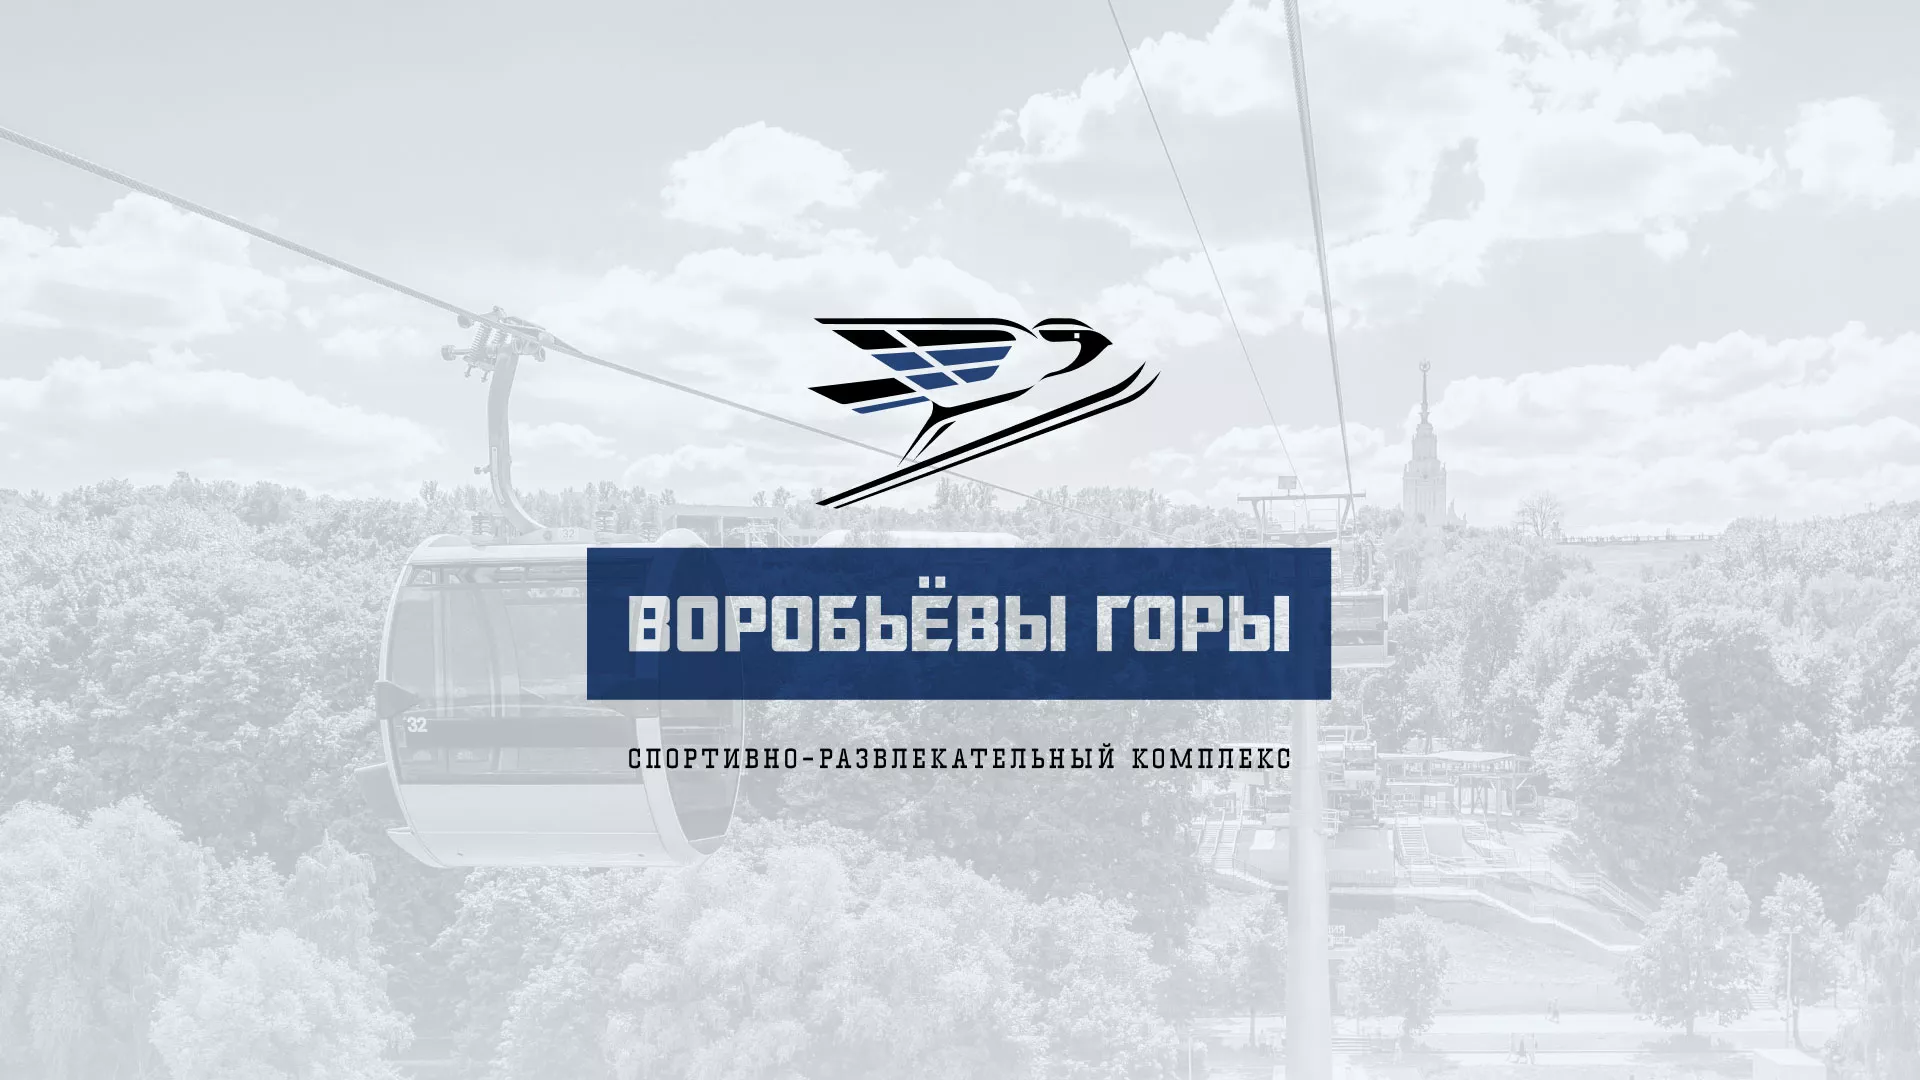 Разработка сайта в Котельниче для спортивно-развлекательного комплекса «Воробьёвы горы»